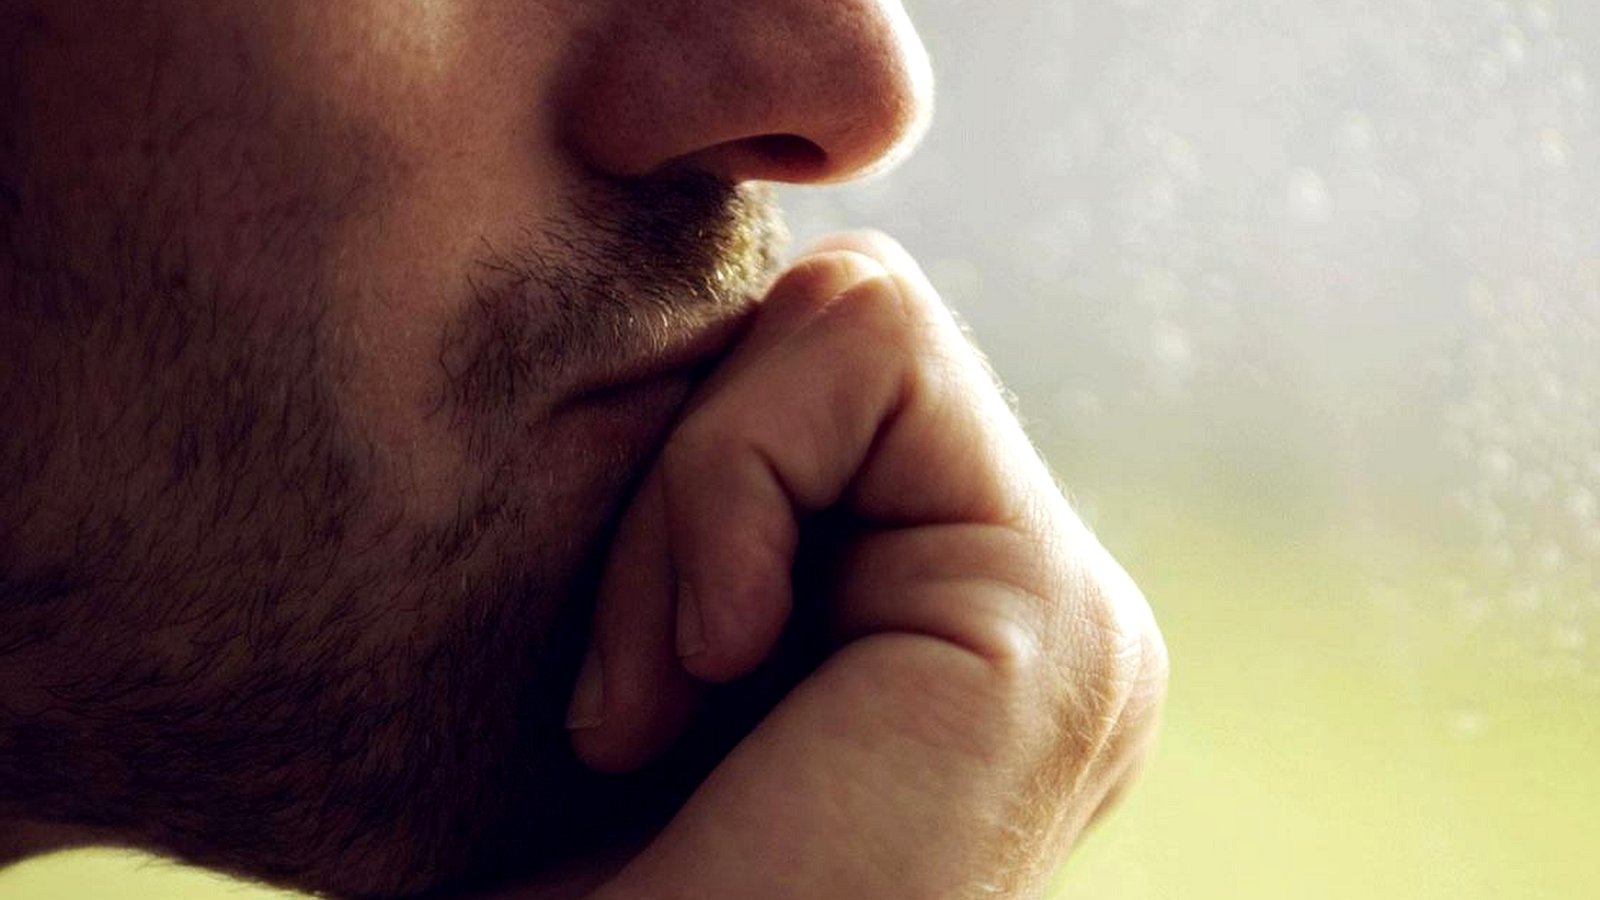 7 изменений в поведении мужчины, кричащих о том, что он по уши влюблён